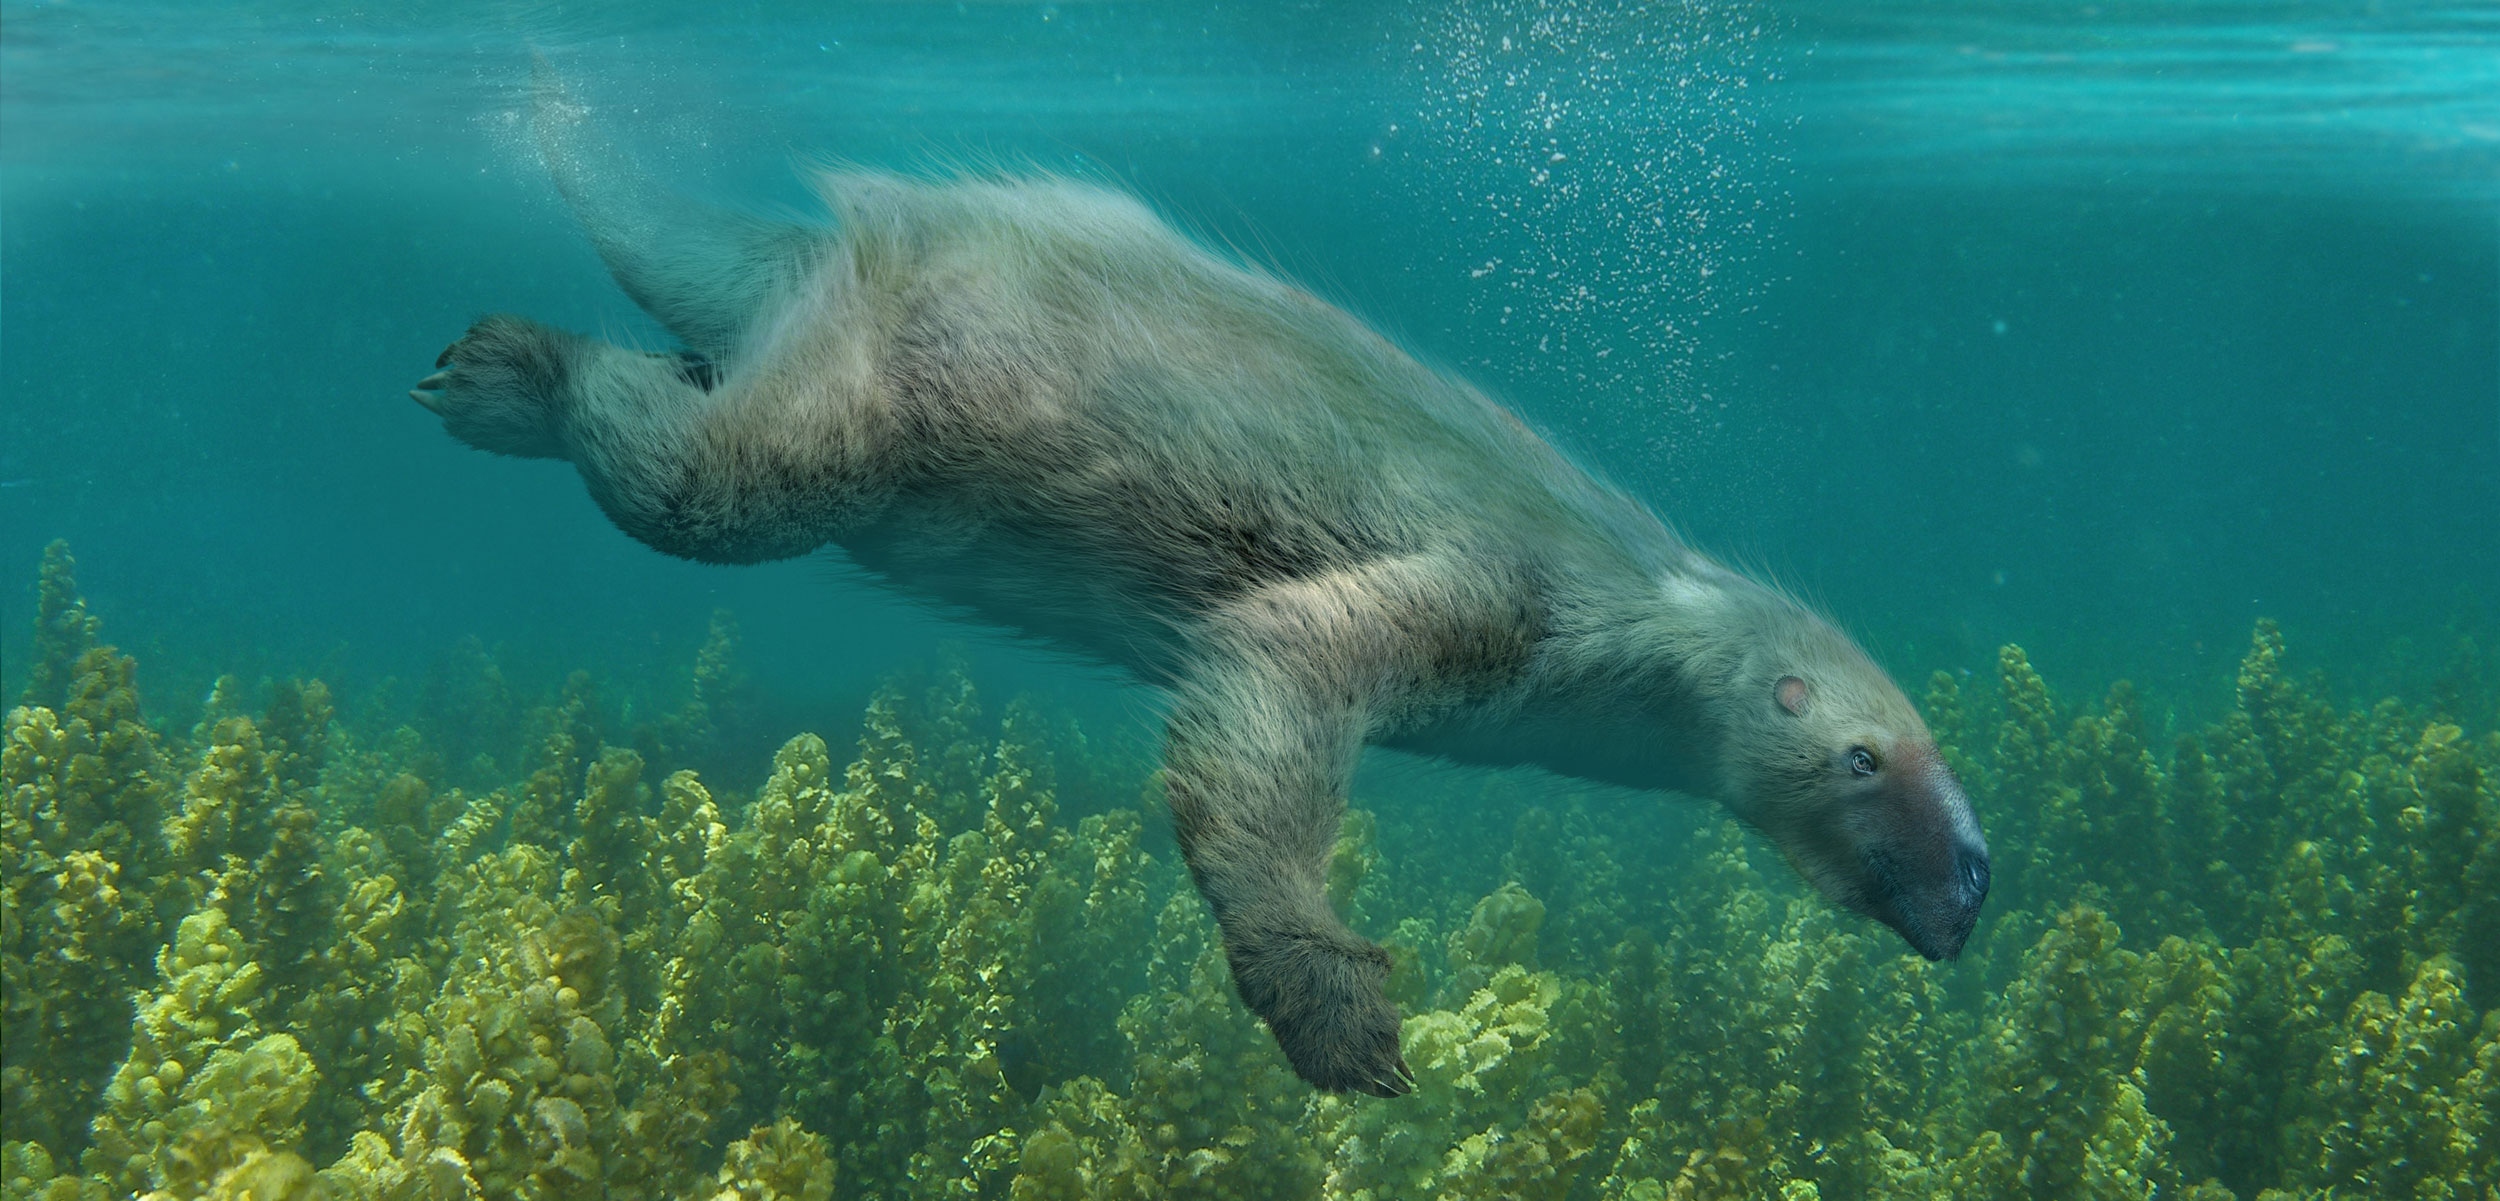 rendering of a Thalassocnus sloth